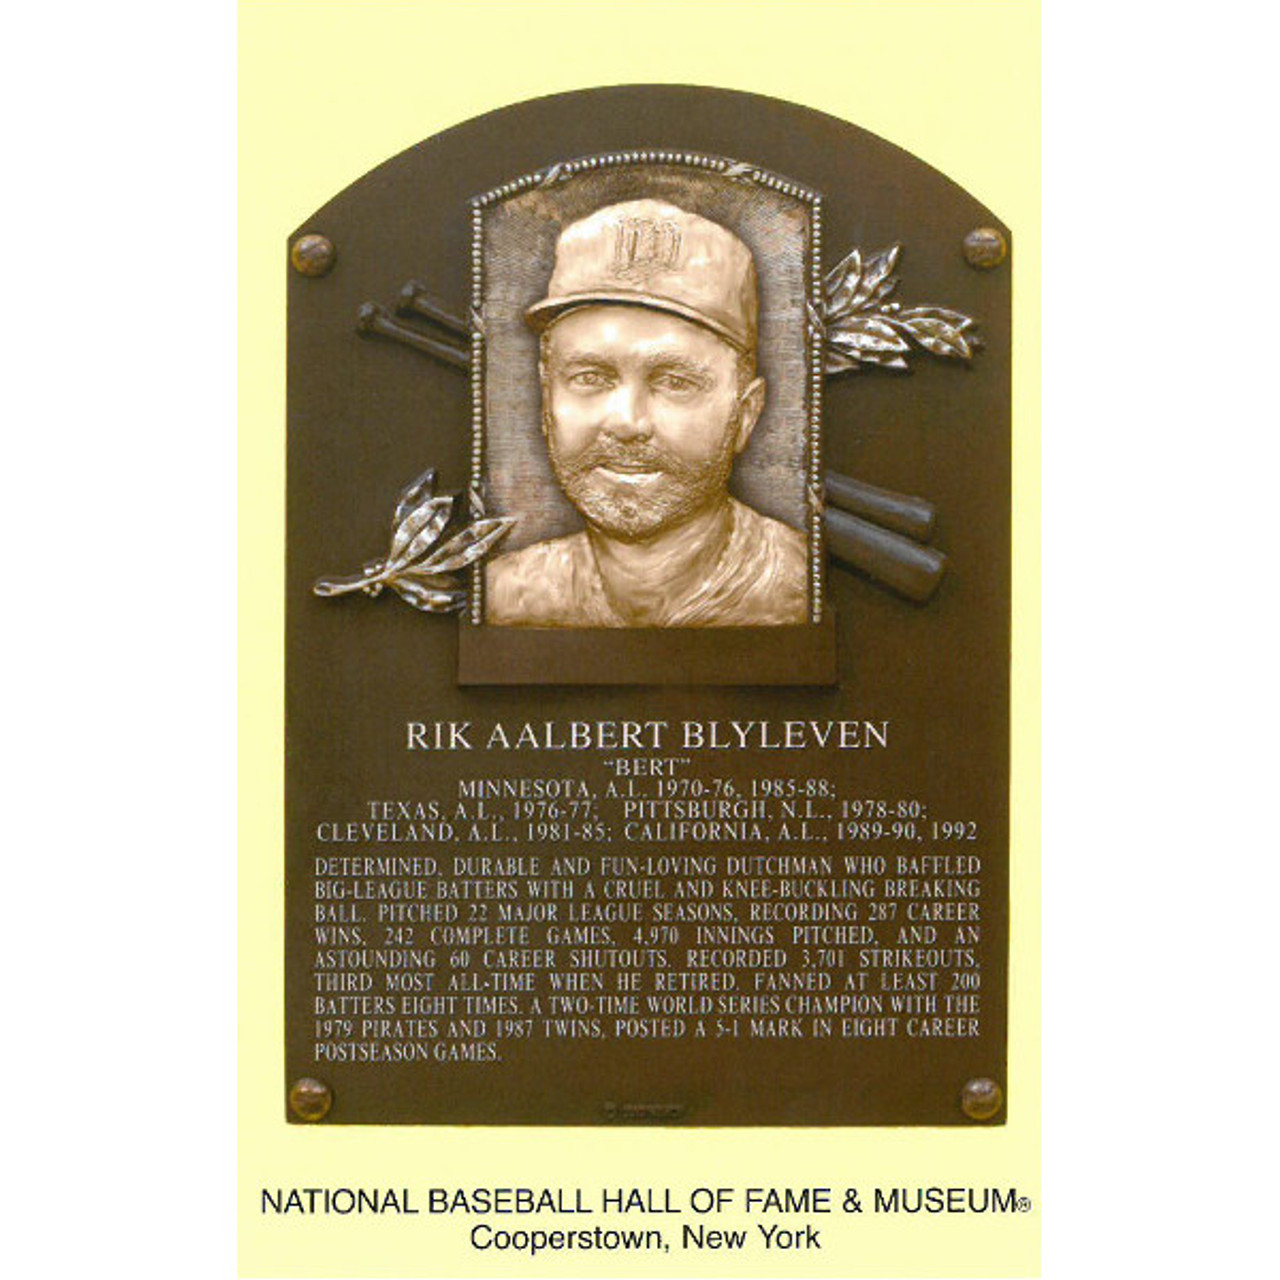 Paul Molitor - Baseball Hall of Fame Biographies 